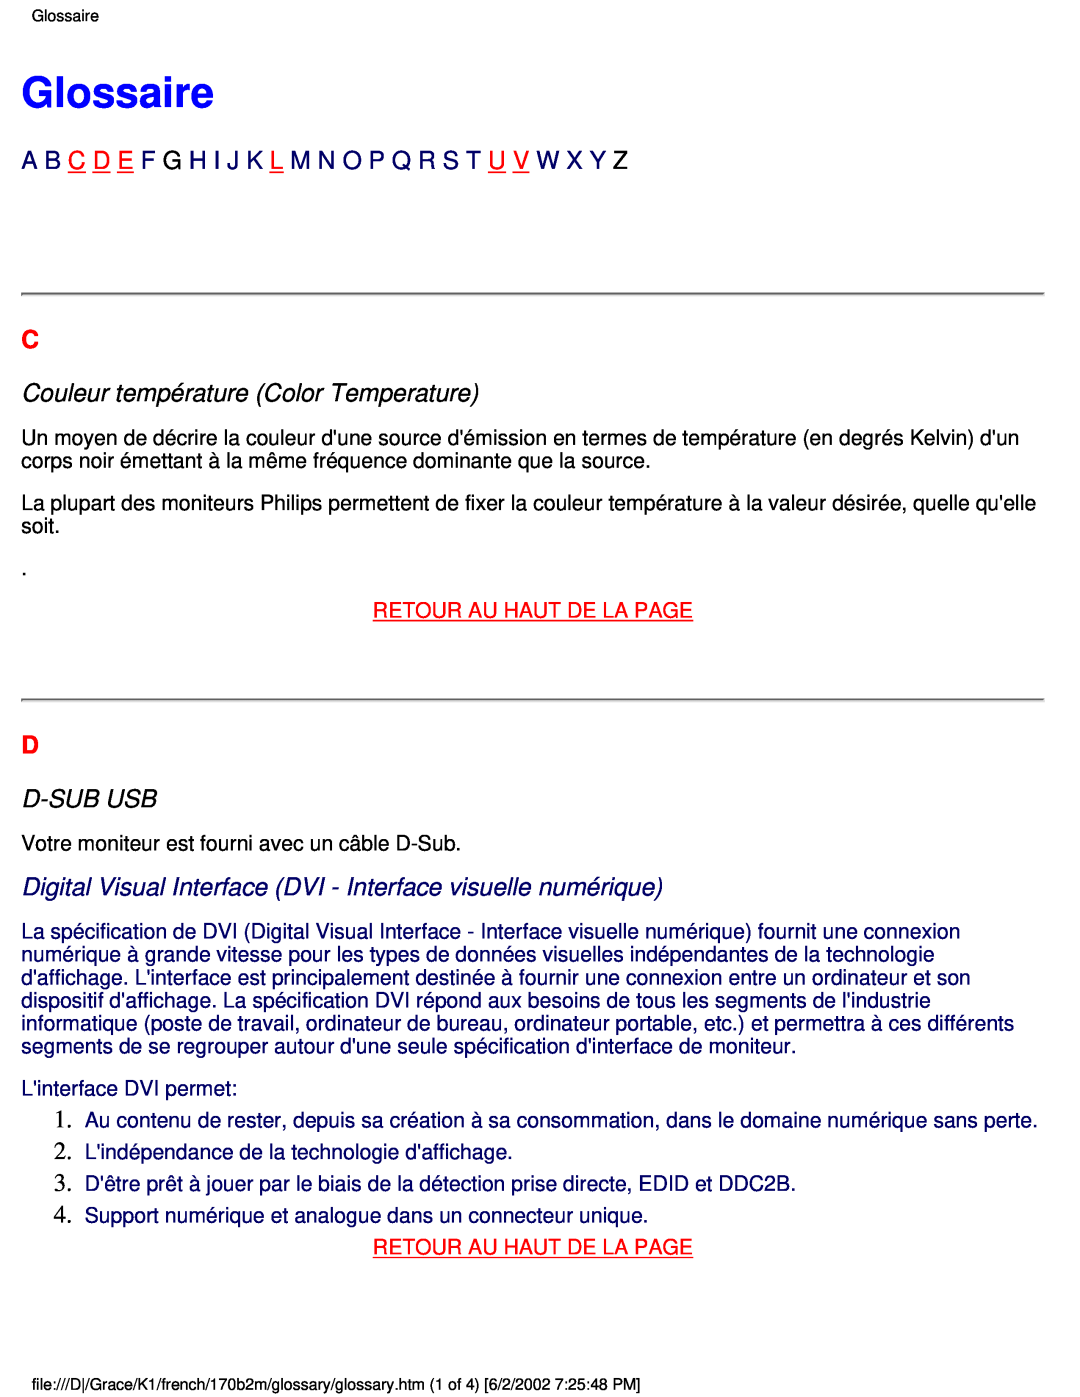 Philips 170B2M user manual Glossaire, Couleur température Color Temperature, D-Sub Usb, Retour Au Haut De La Page 